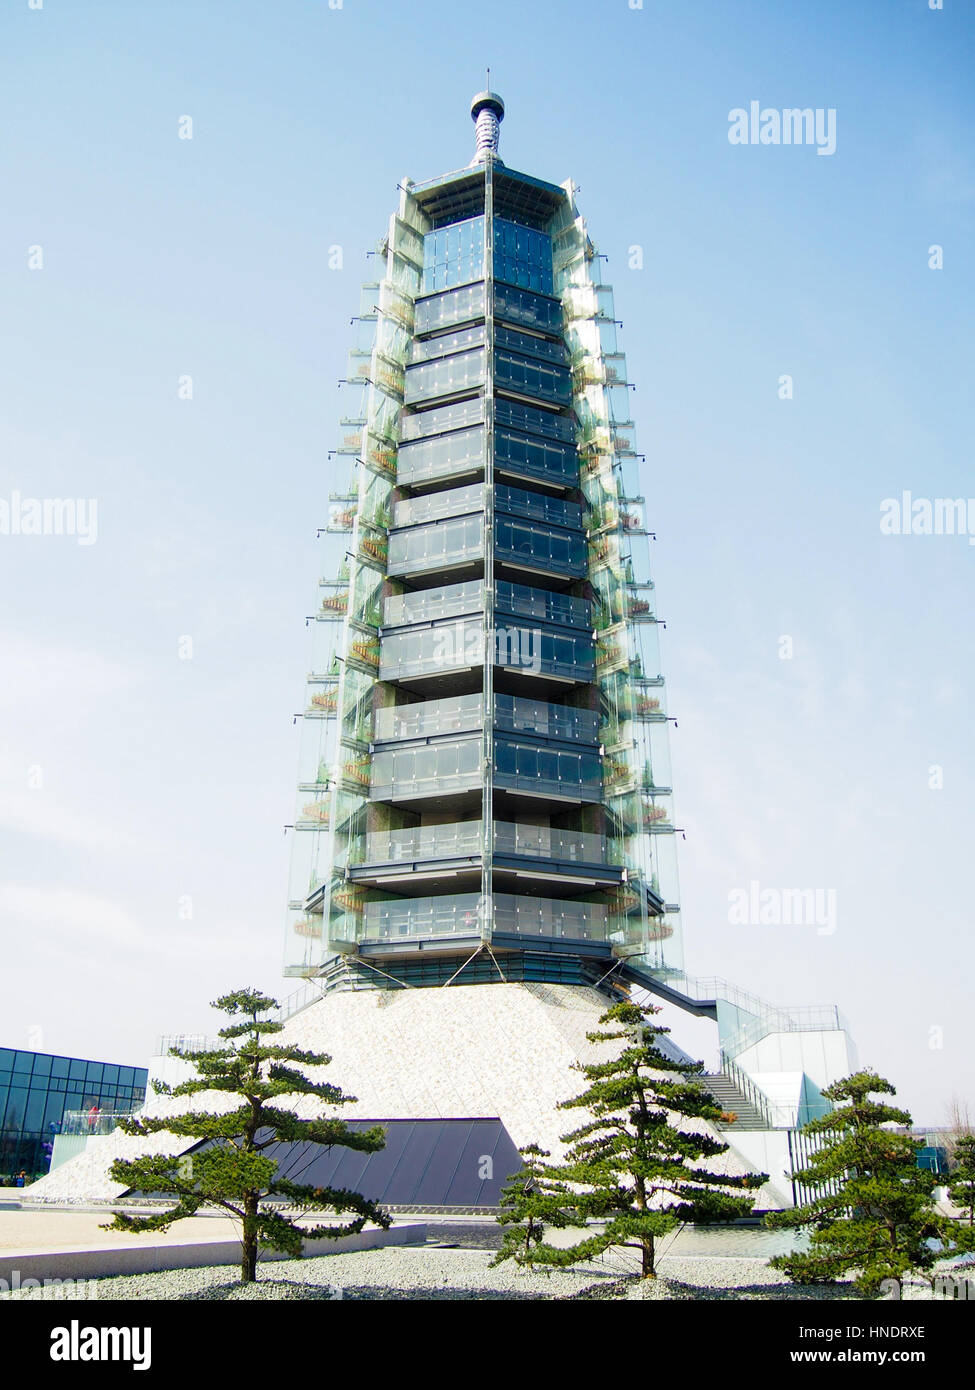 Merveille du monde antique nouvellement reconstruite de la tour de porcelaine à Nanjing en Chine. Banque D'Images